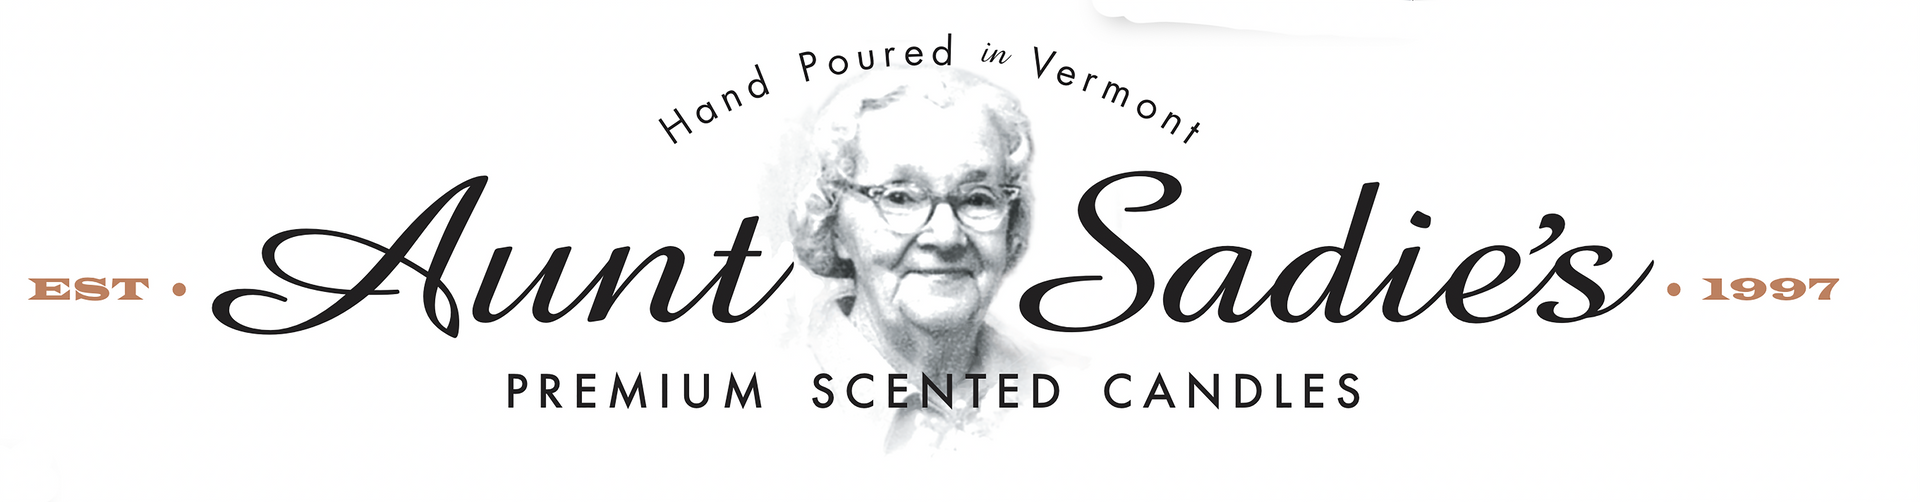 Aunt Sadie's Premium Scented Candles logo